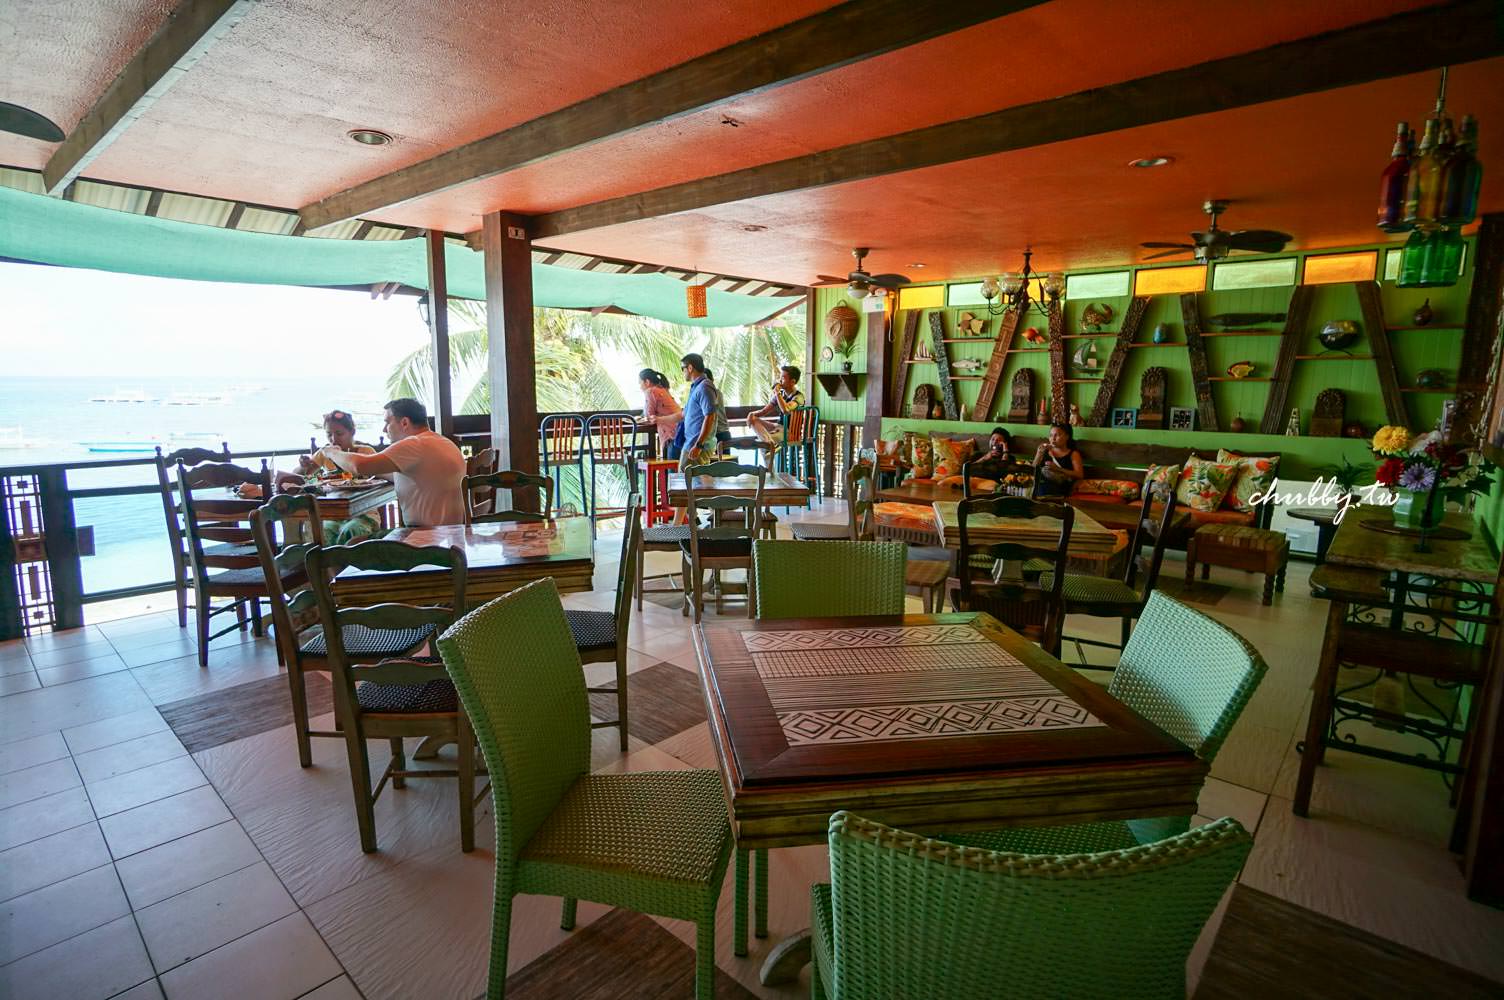 薄荷島美食海景餐廳│蜜蜂農場The Buzzz Cafe│Alona Beach旁就可以吃到蜜蜂農場了!